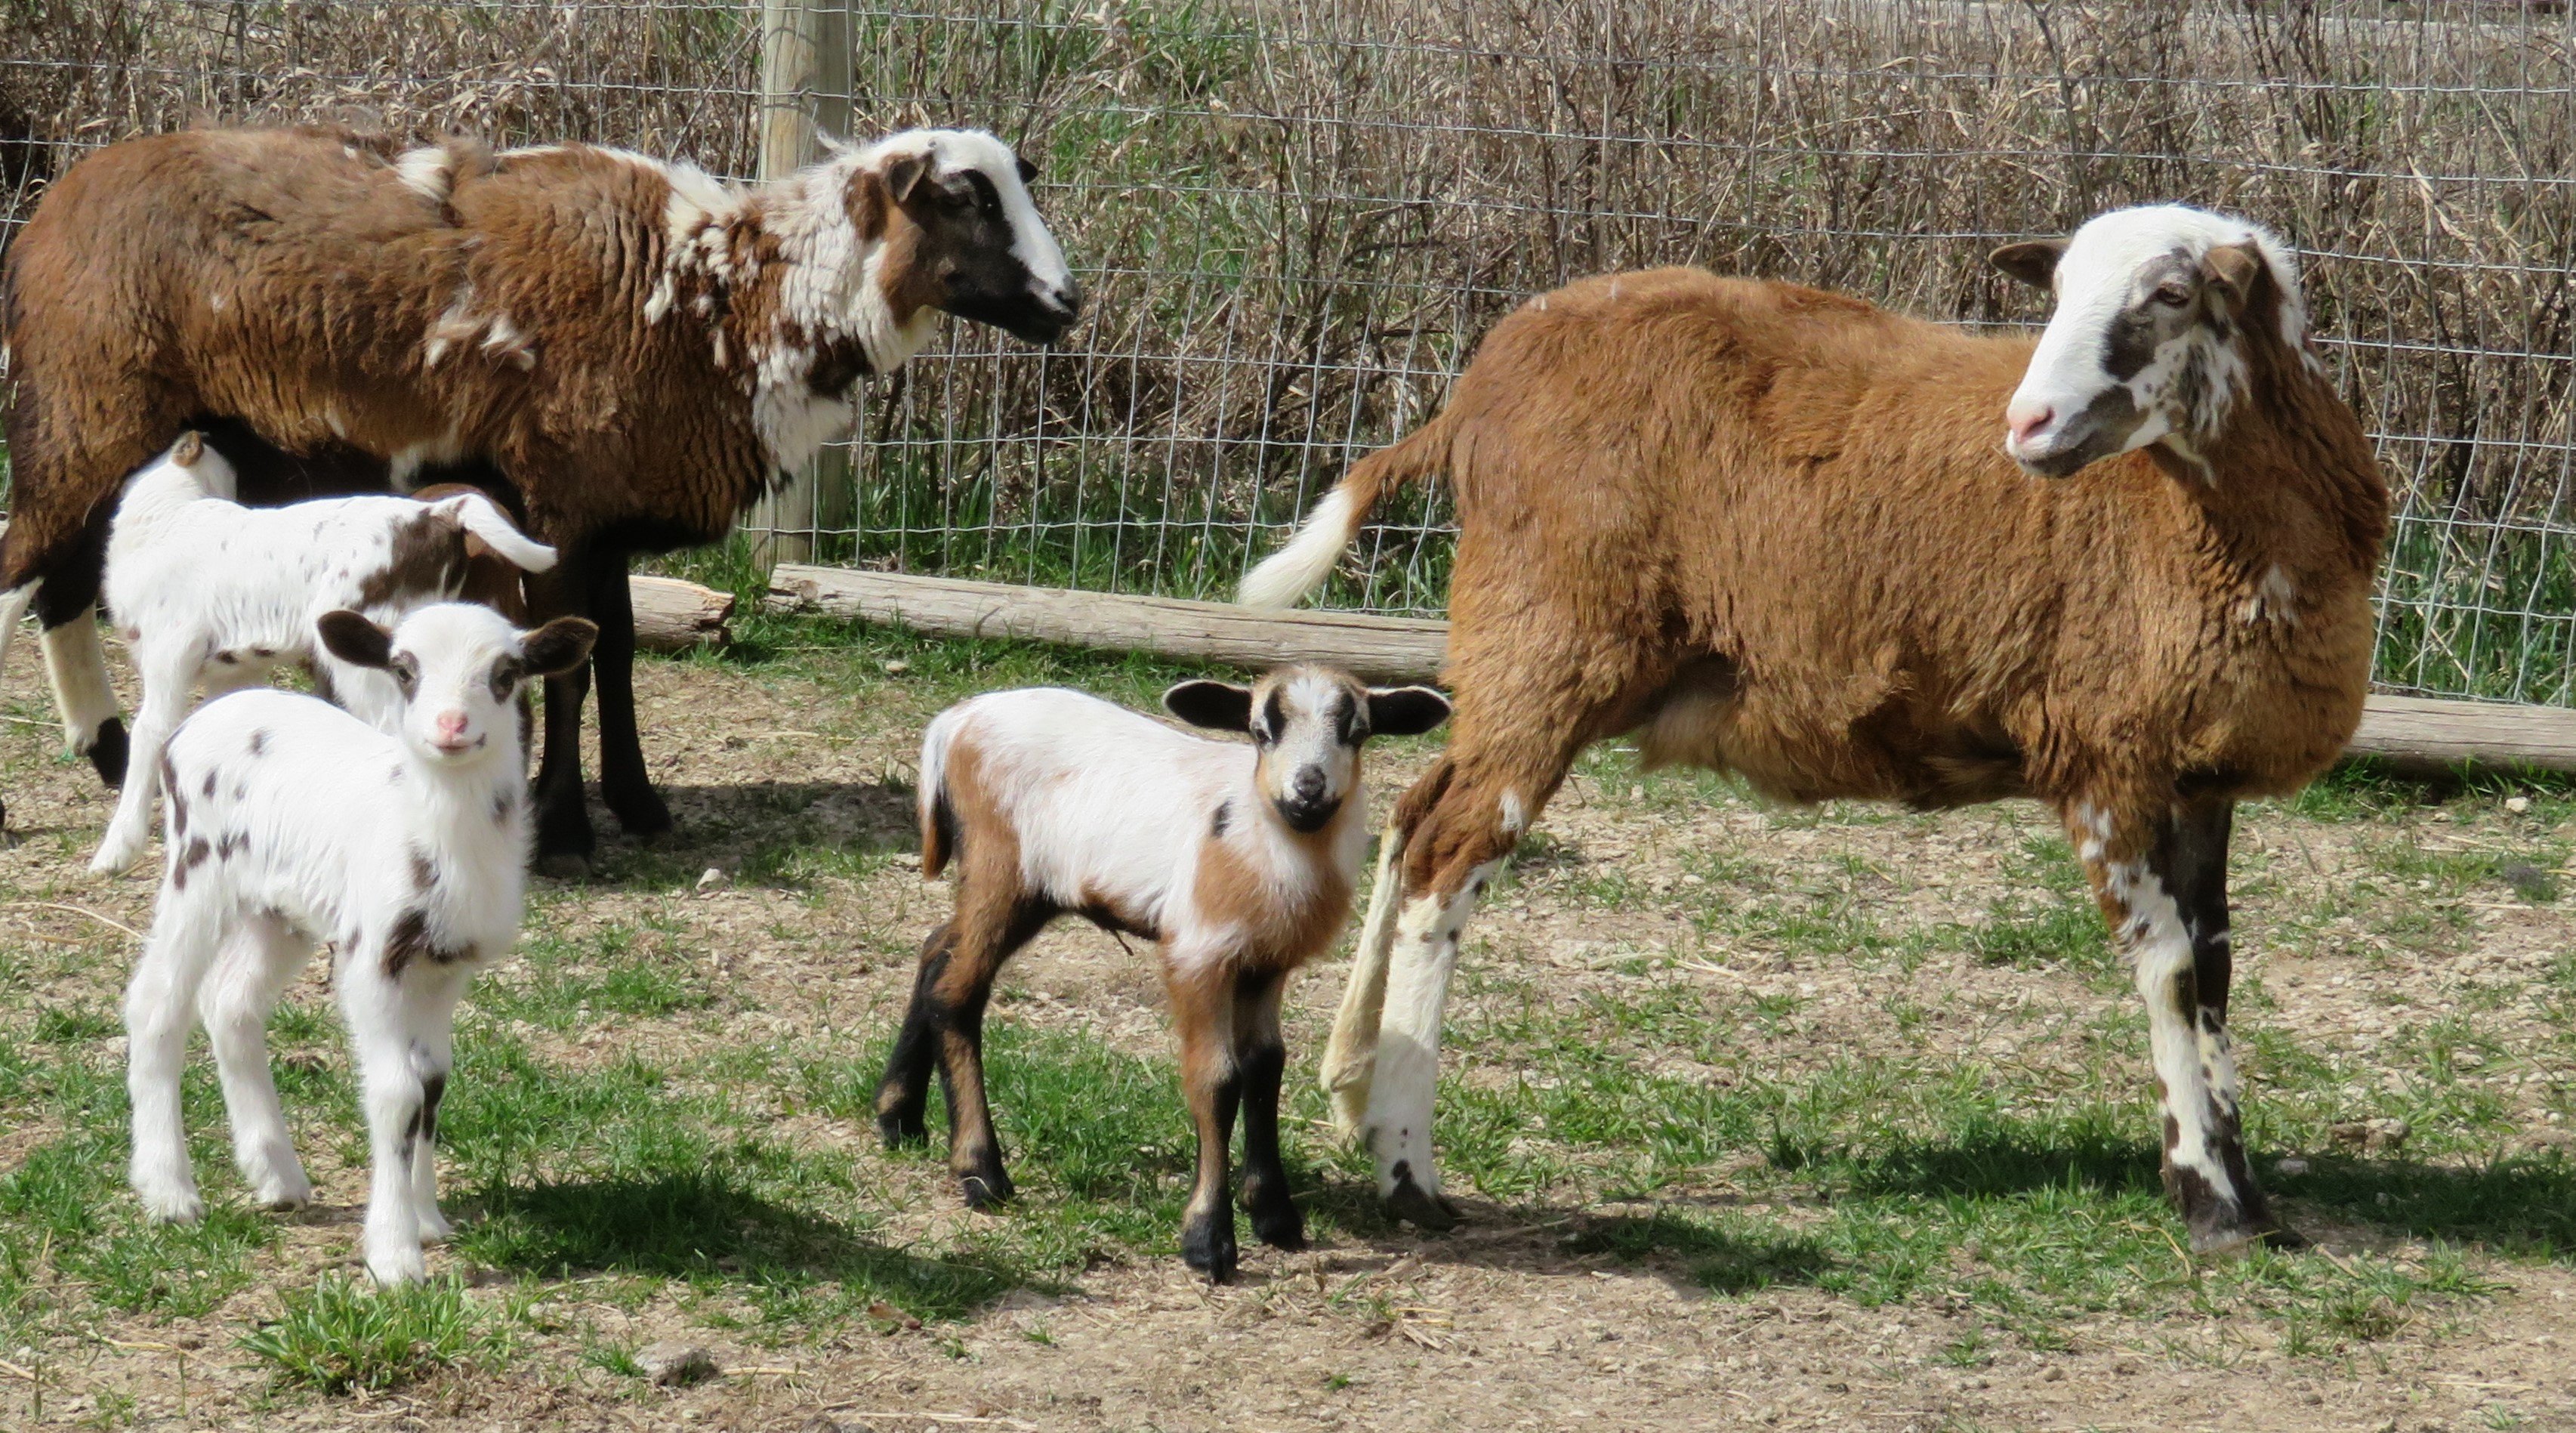 Big Rock Kutenai Spirit
ram & ewe lambs